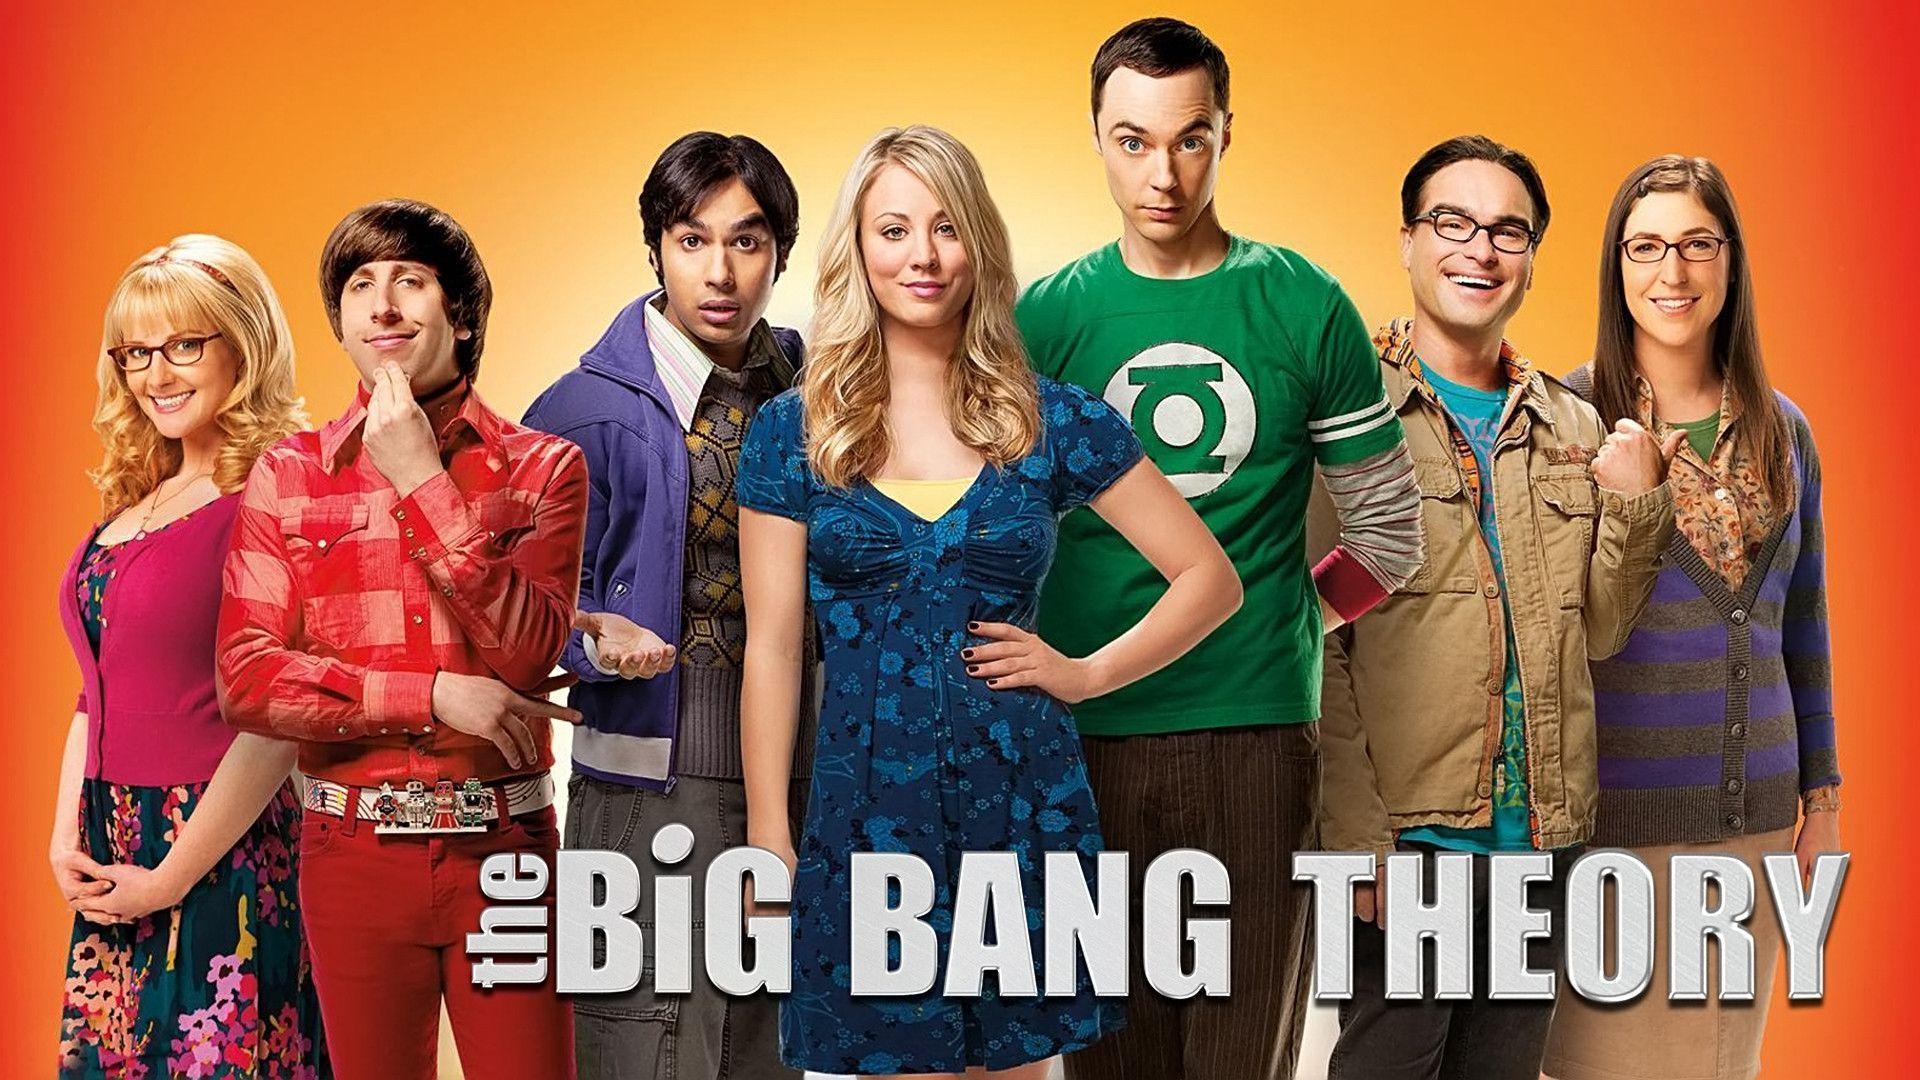 Fonds d&;écran The Big Bang Theory, tous les wallpaper The Big